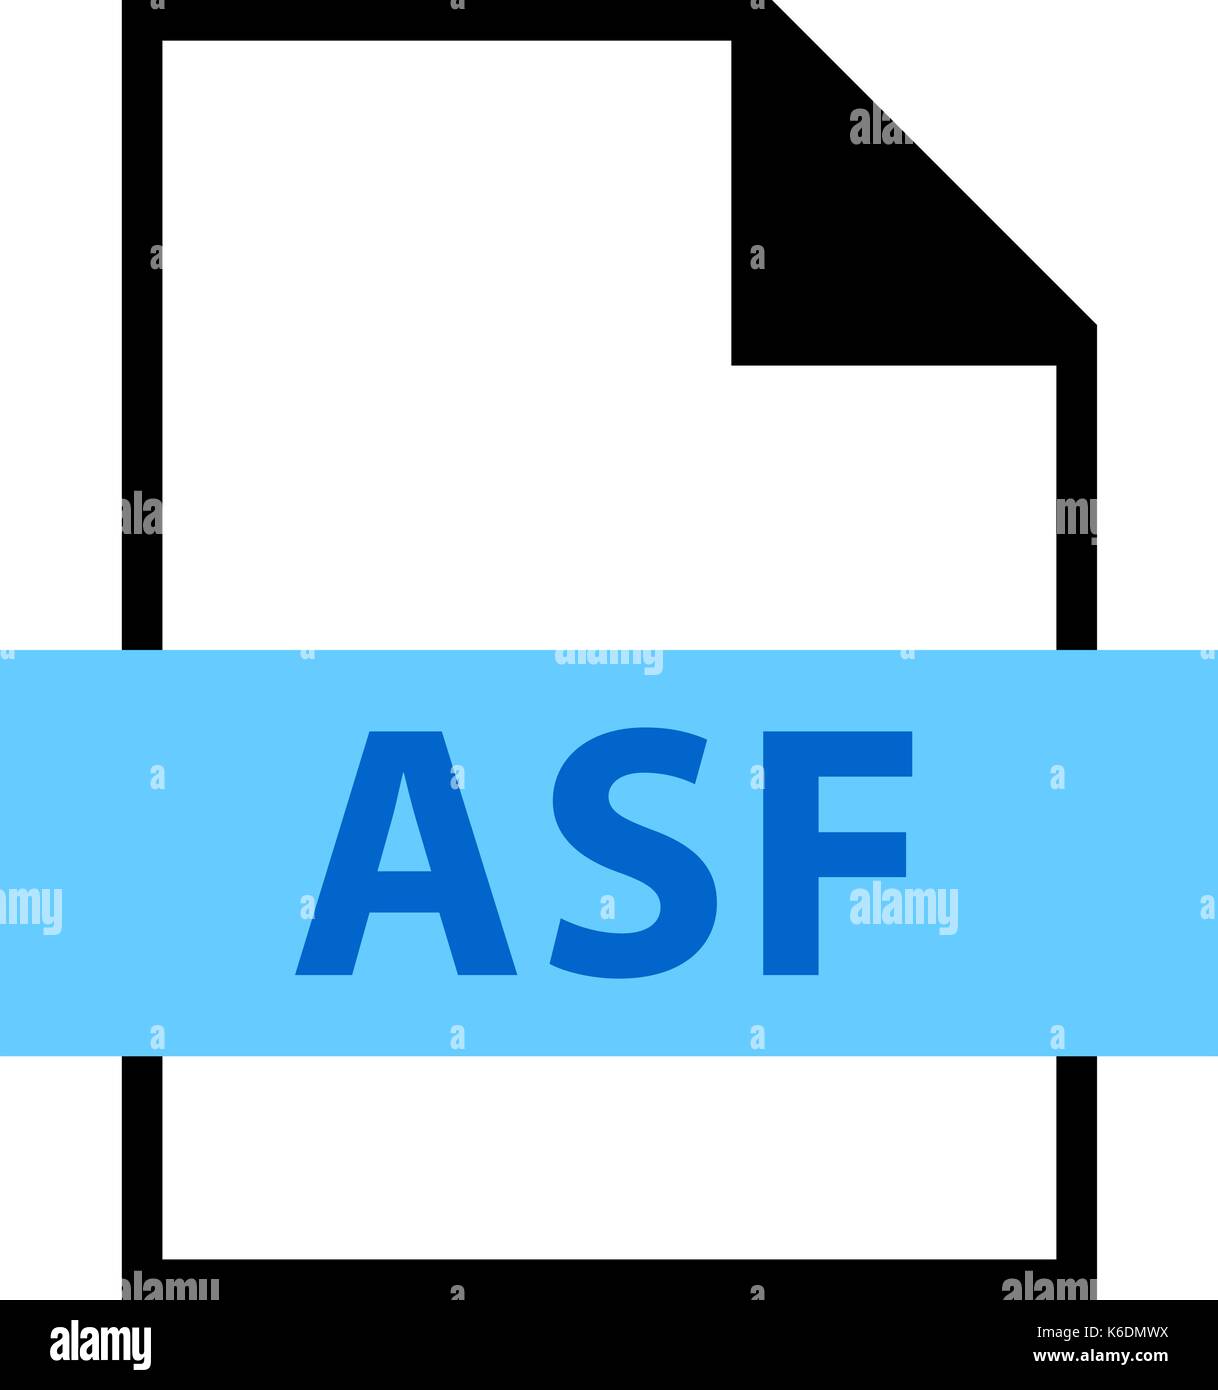 Utilizarlo en todos sus diseños. Icono de extensión de nombre de archivo asf Advanced Streaming Format, Formato de transmisión activa en estilo plano. Ilustración del Vector